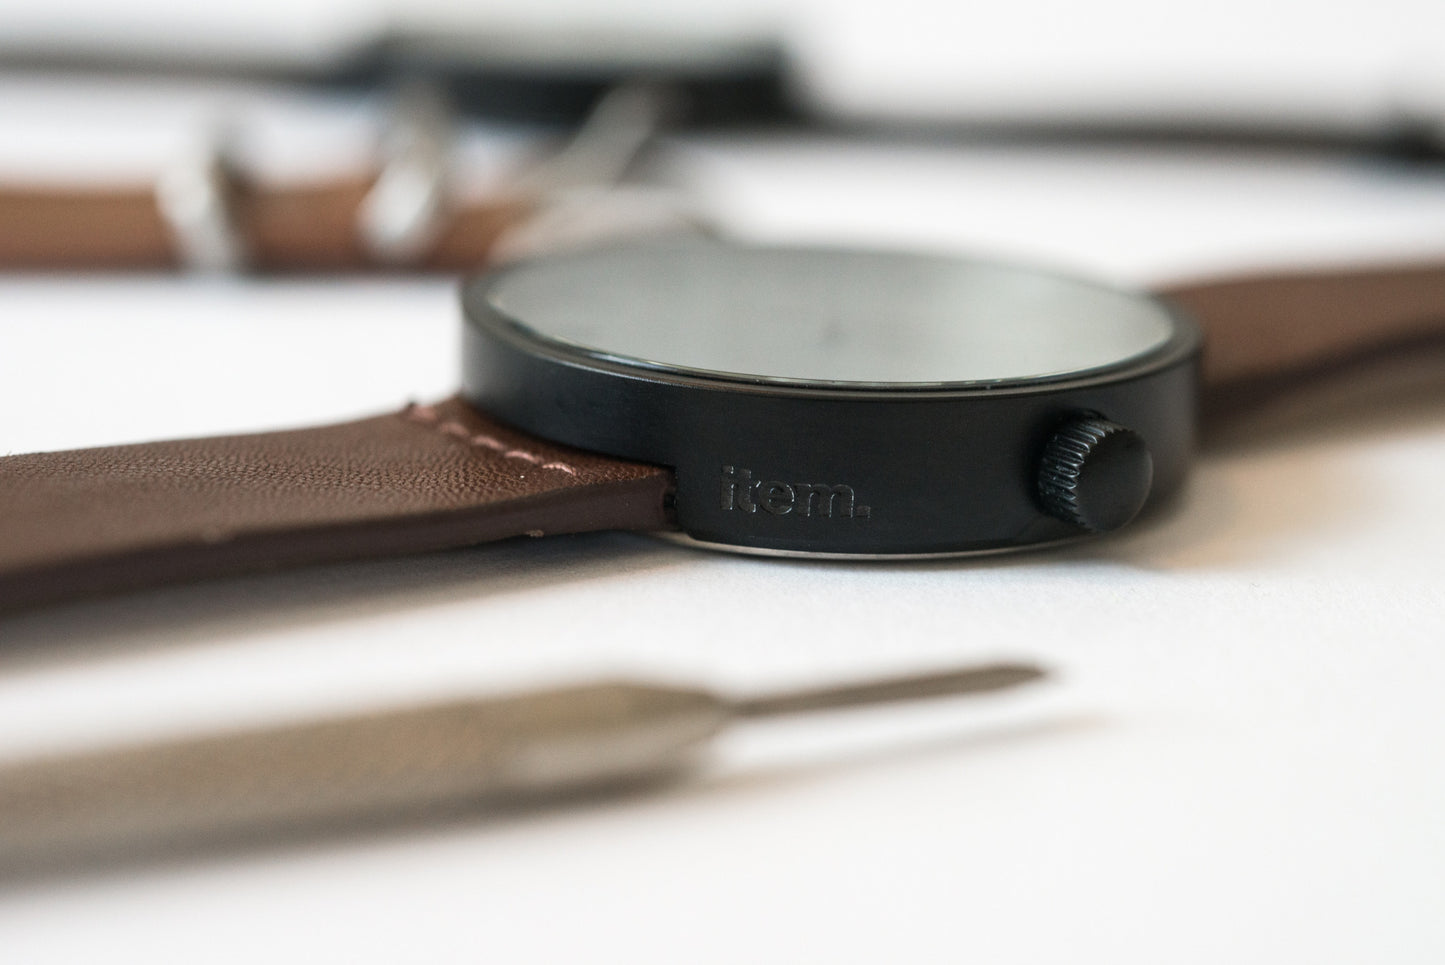 ITEM #003: Walnut Wrist Watch